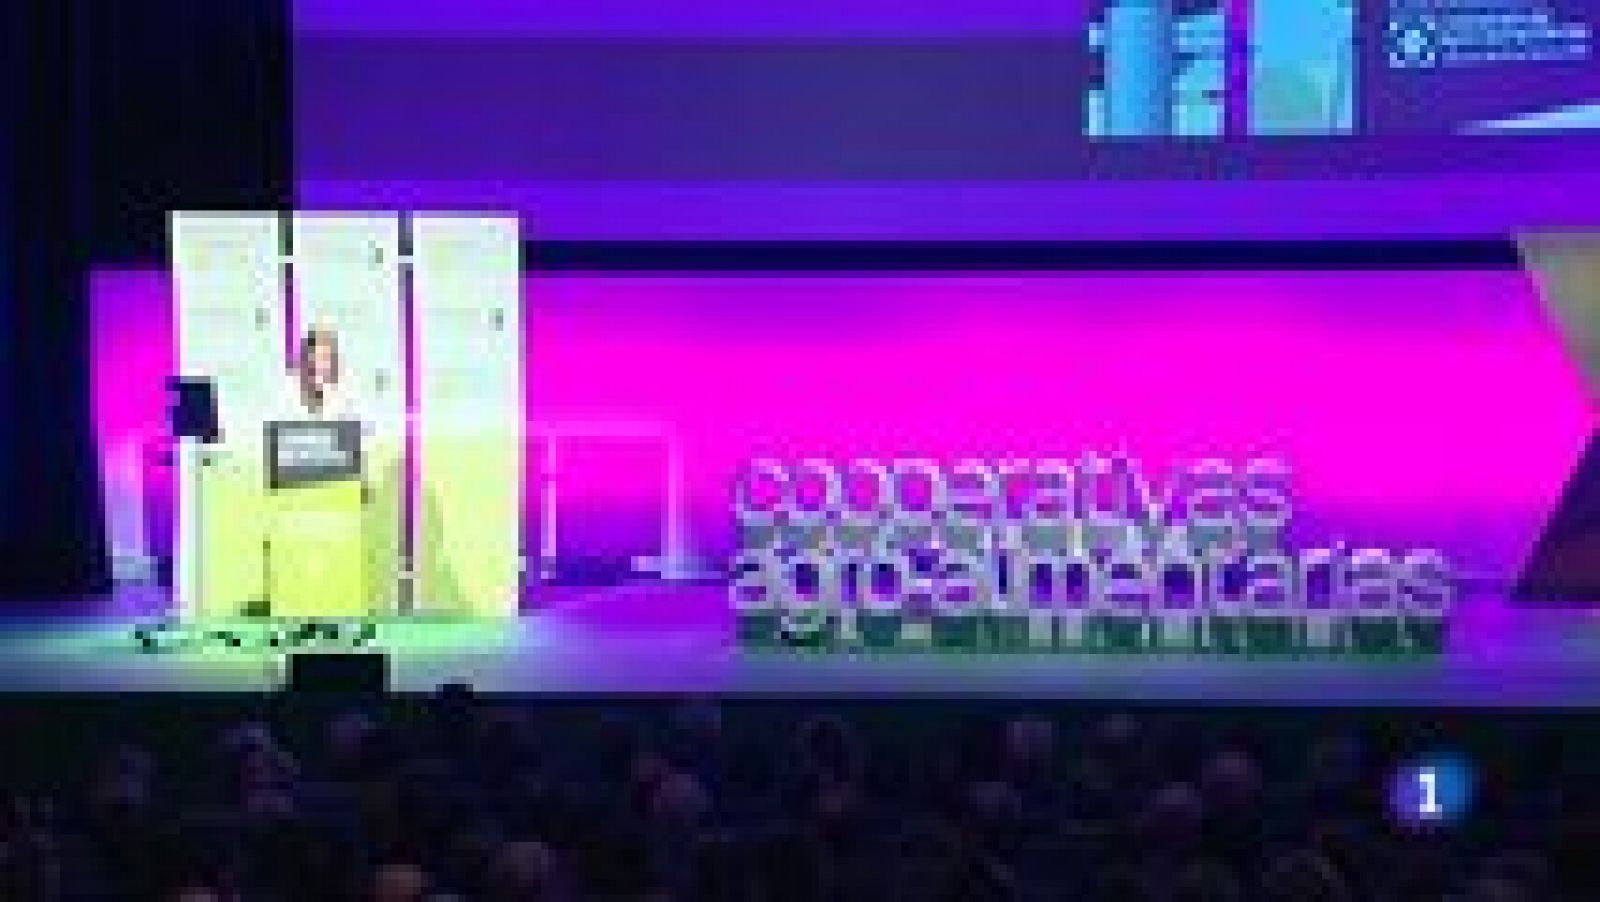 L'informatiu - Comunitat Valenciana: La Comunidad Valenciana en 2' - 26/02/15 | RTVE Play